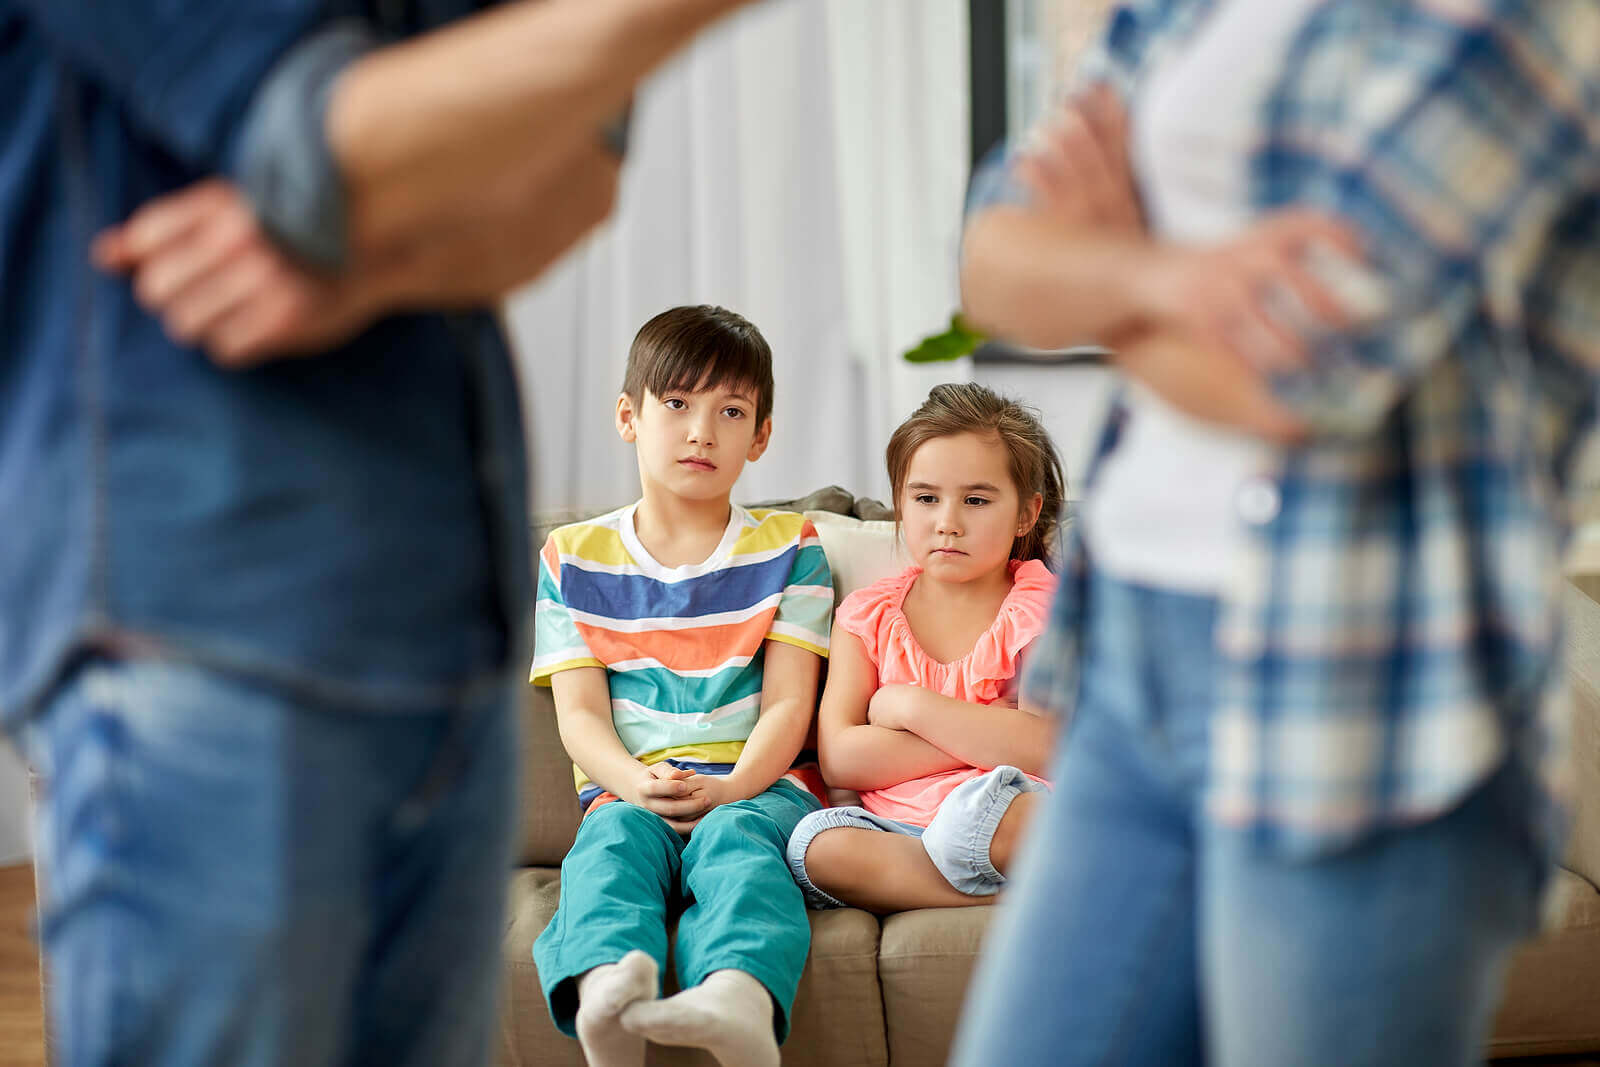 Conversaciones de pareja que es mejor evitar tener en frente de los niños